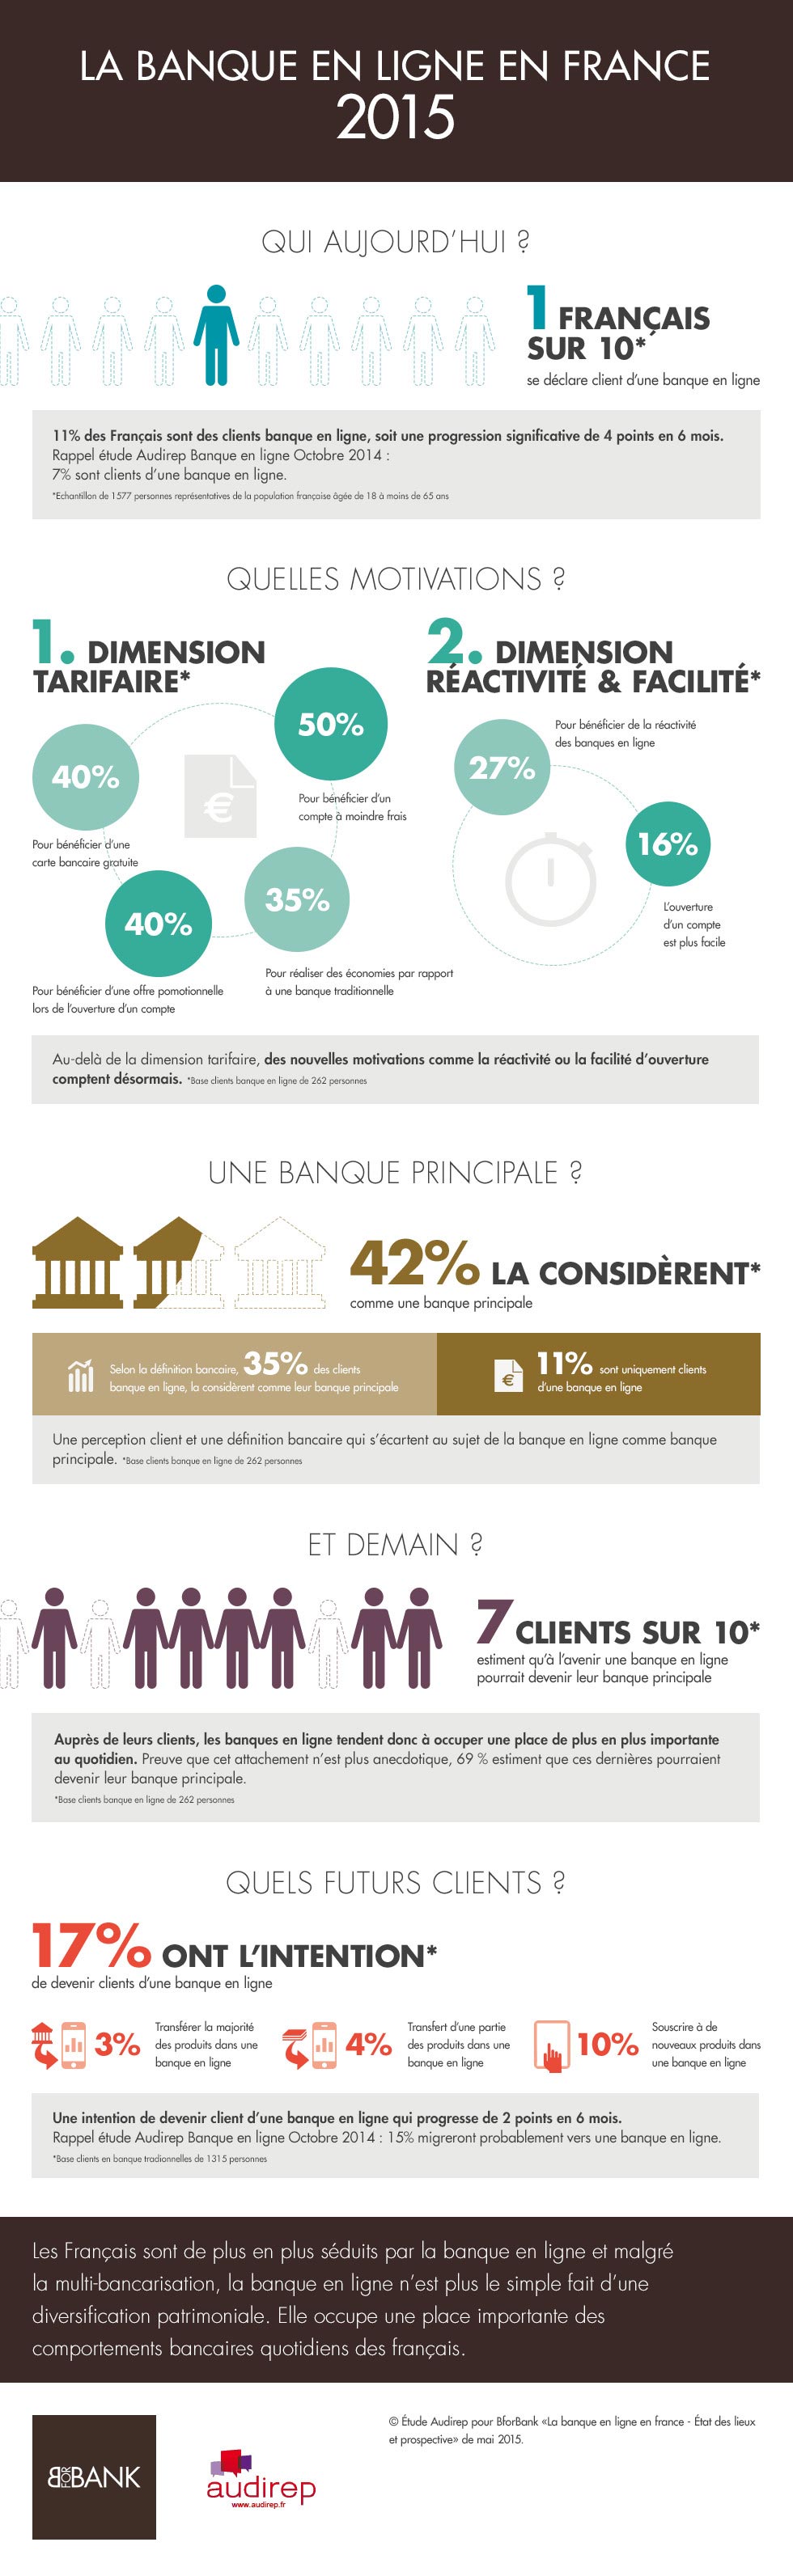 Banque en ligne en France en 2015